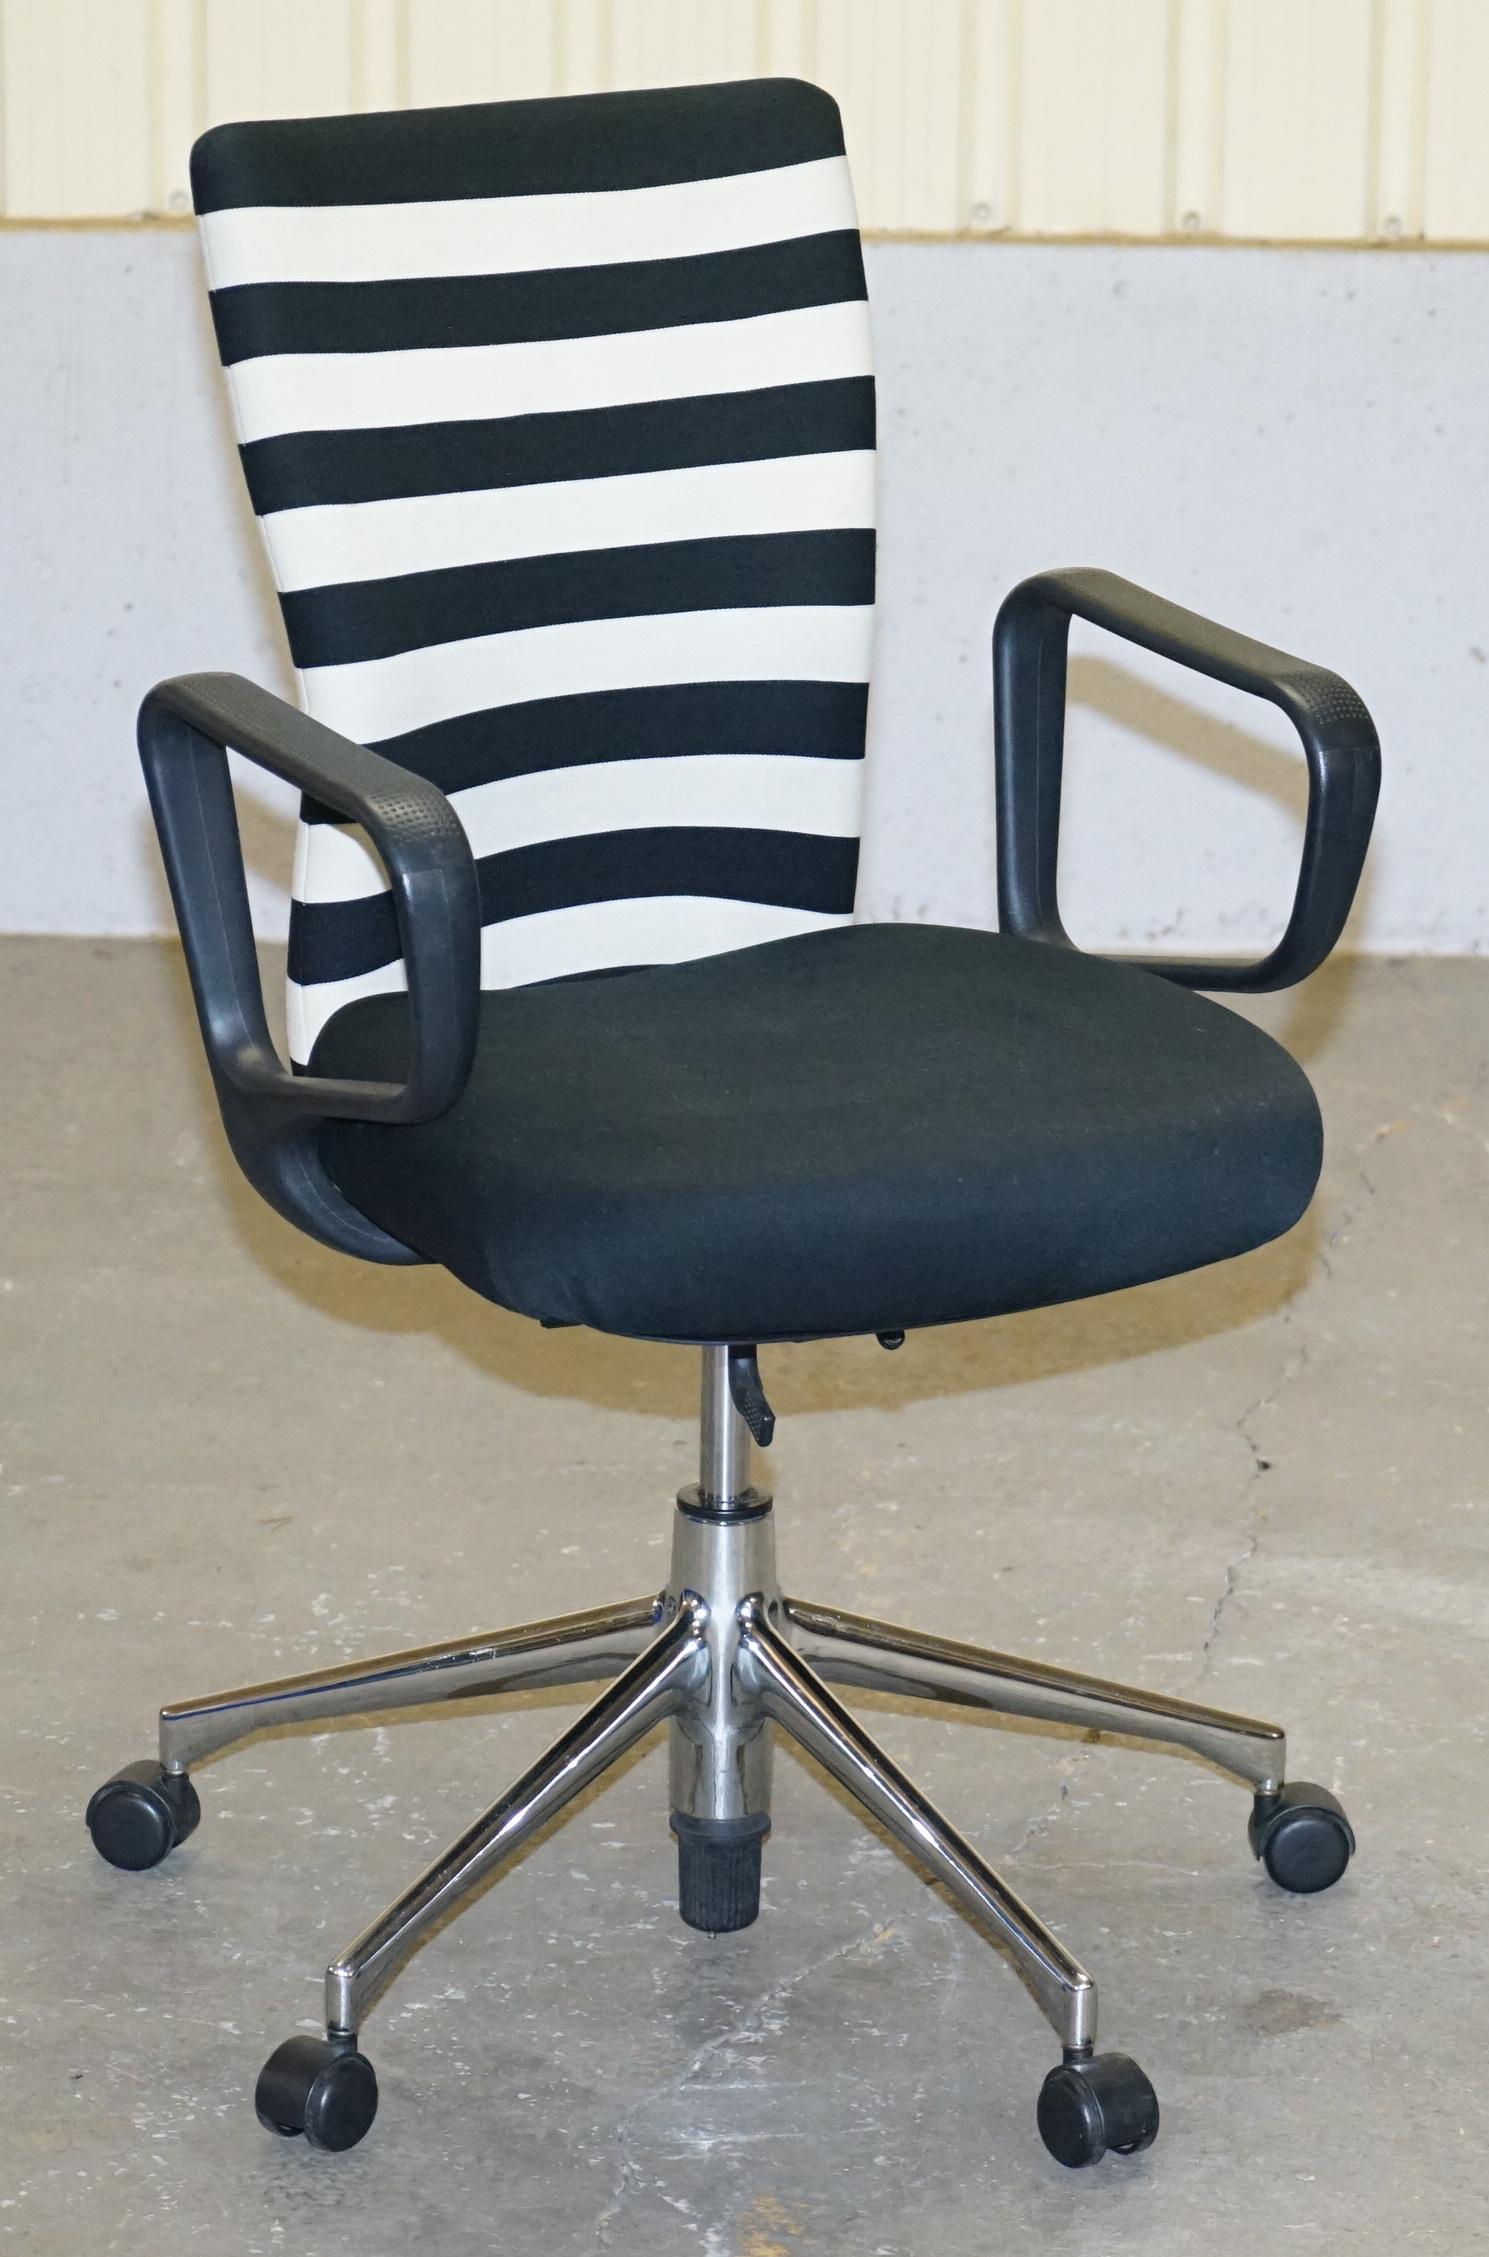 Wir freuen uns, 1 von 2 Original Vitra Ergonomic Bürodrehstühlen zum Verkauf anbieten zu können

Dieser Verkauf ist für einen Sessel mit der Option, das Paar zu kaufen

Das ist außergewöhnlich bequem, es ist drehbar, man kann den Neigungswinkel und